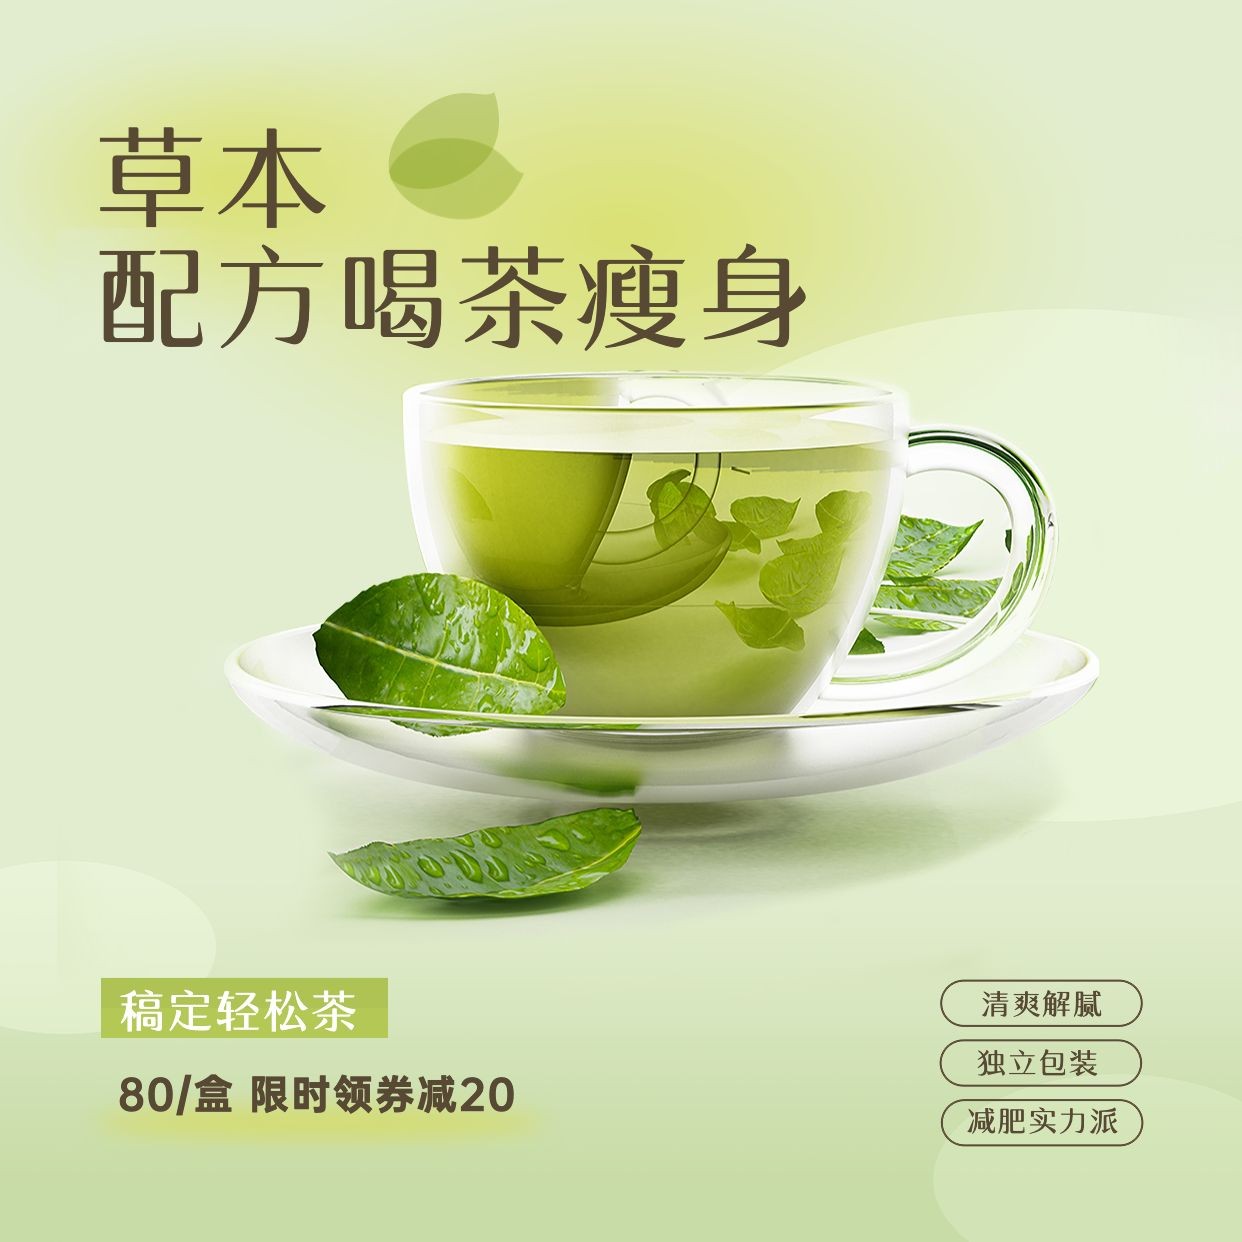 微商养生保健养生茶产品营销展示方形海报预览效果